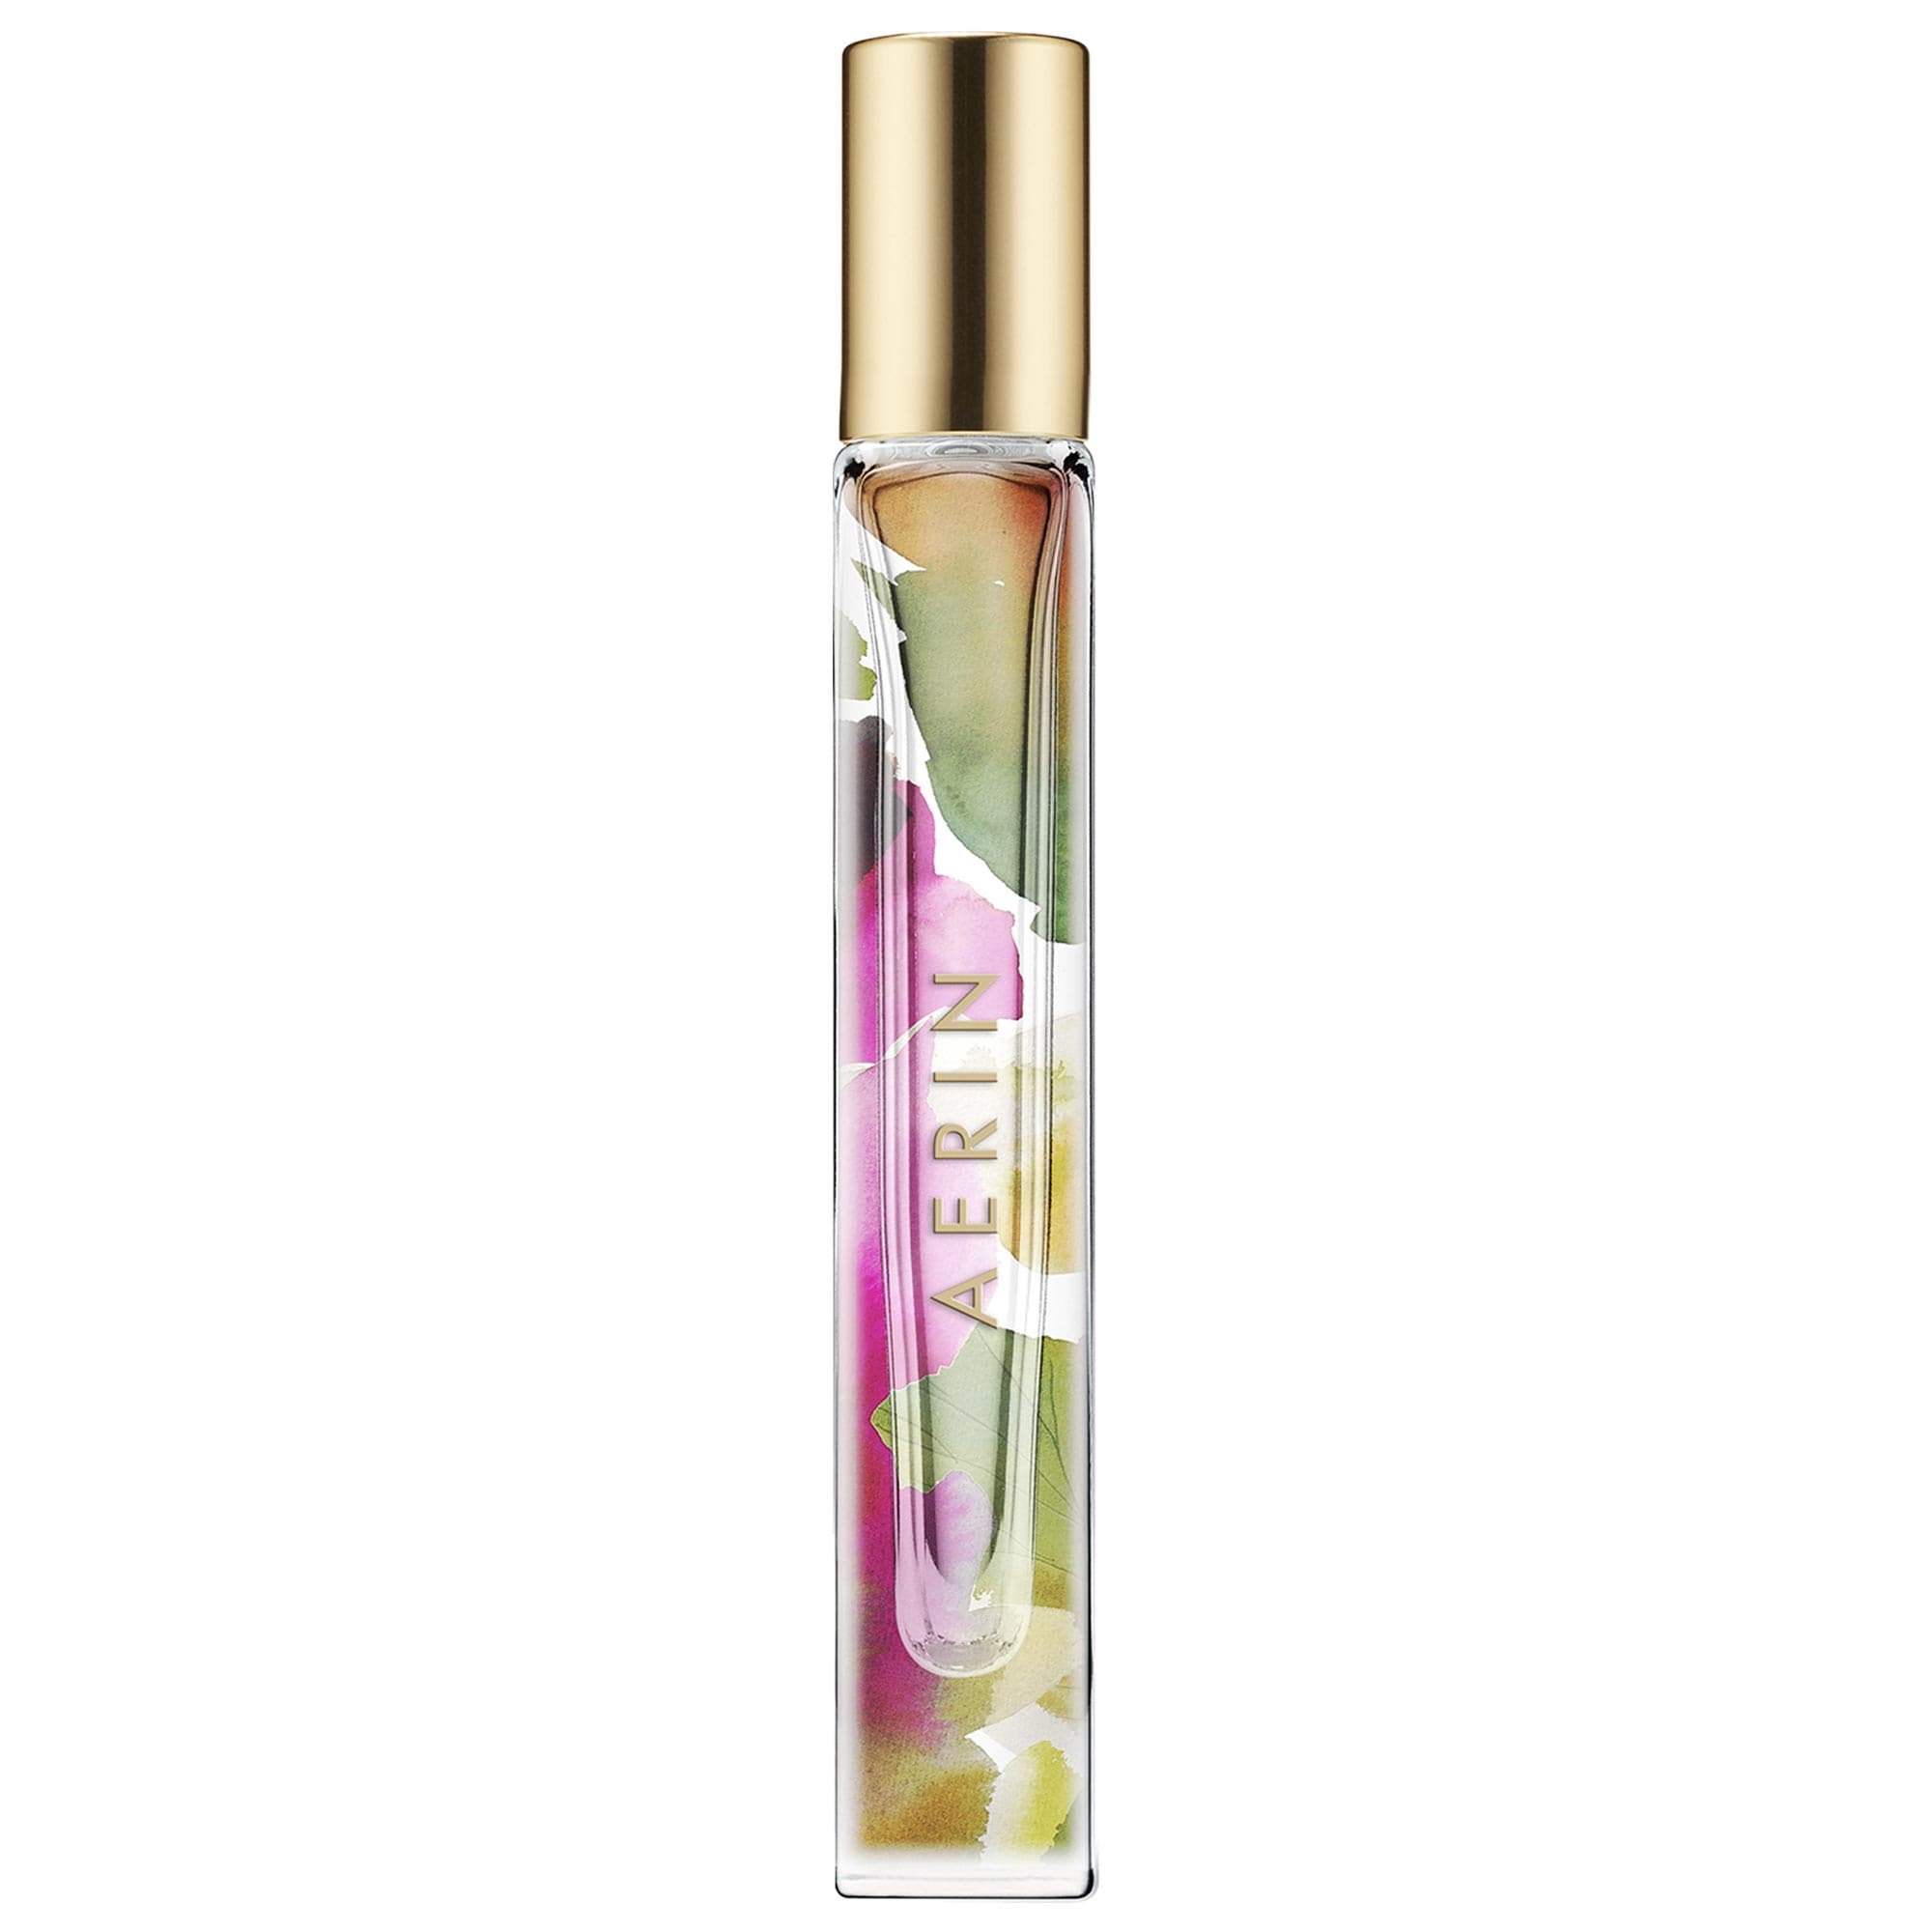 Cedar Violet Eau de Parfum Travel Spray Aerin